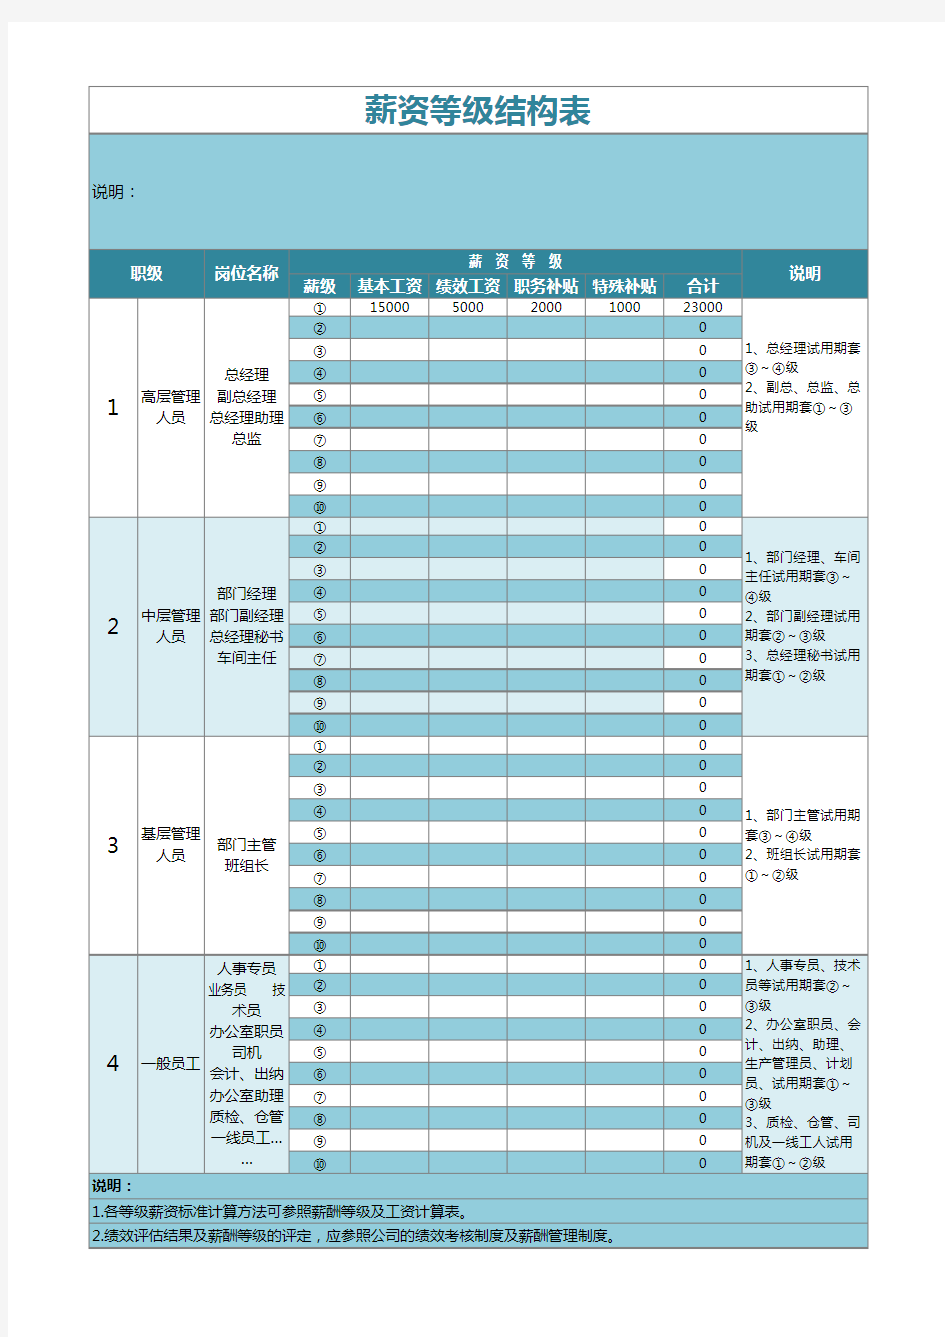 11【表格】薪资等级结构表